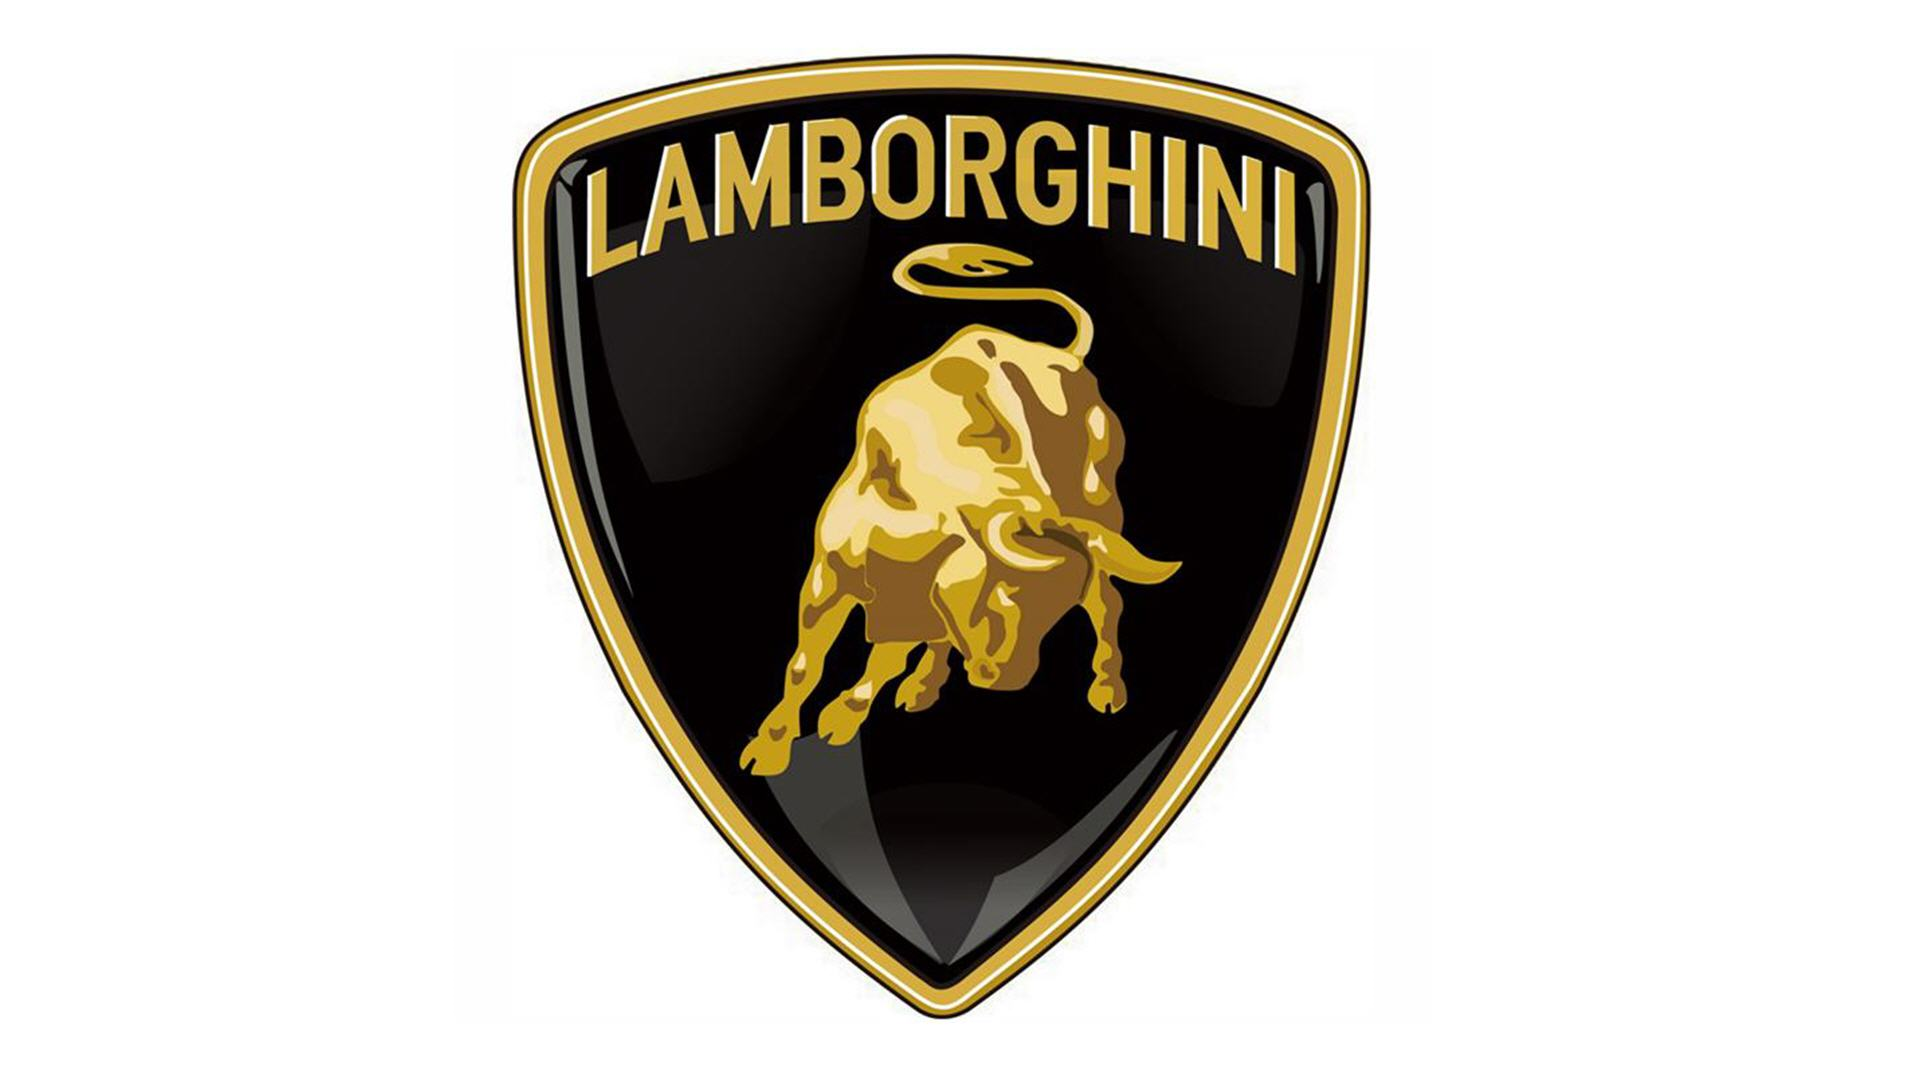 Lamborghini Logo wallpapers | PixelsTalk.Net